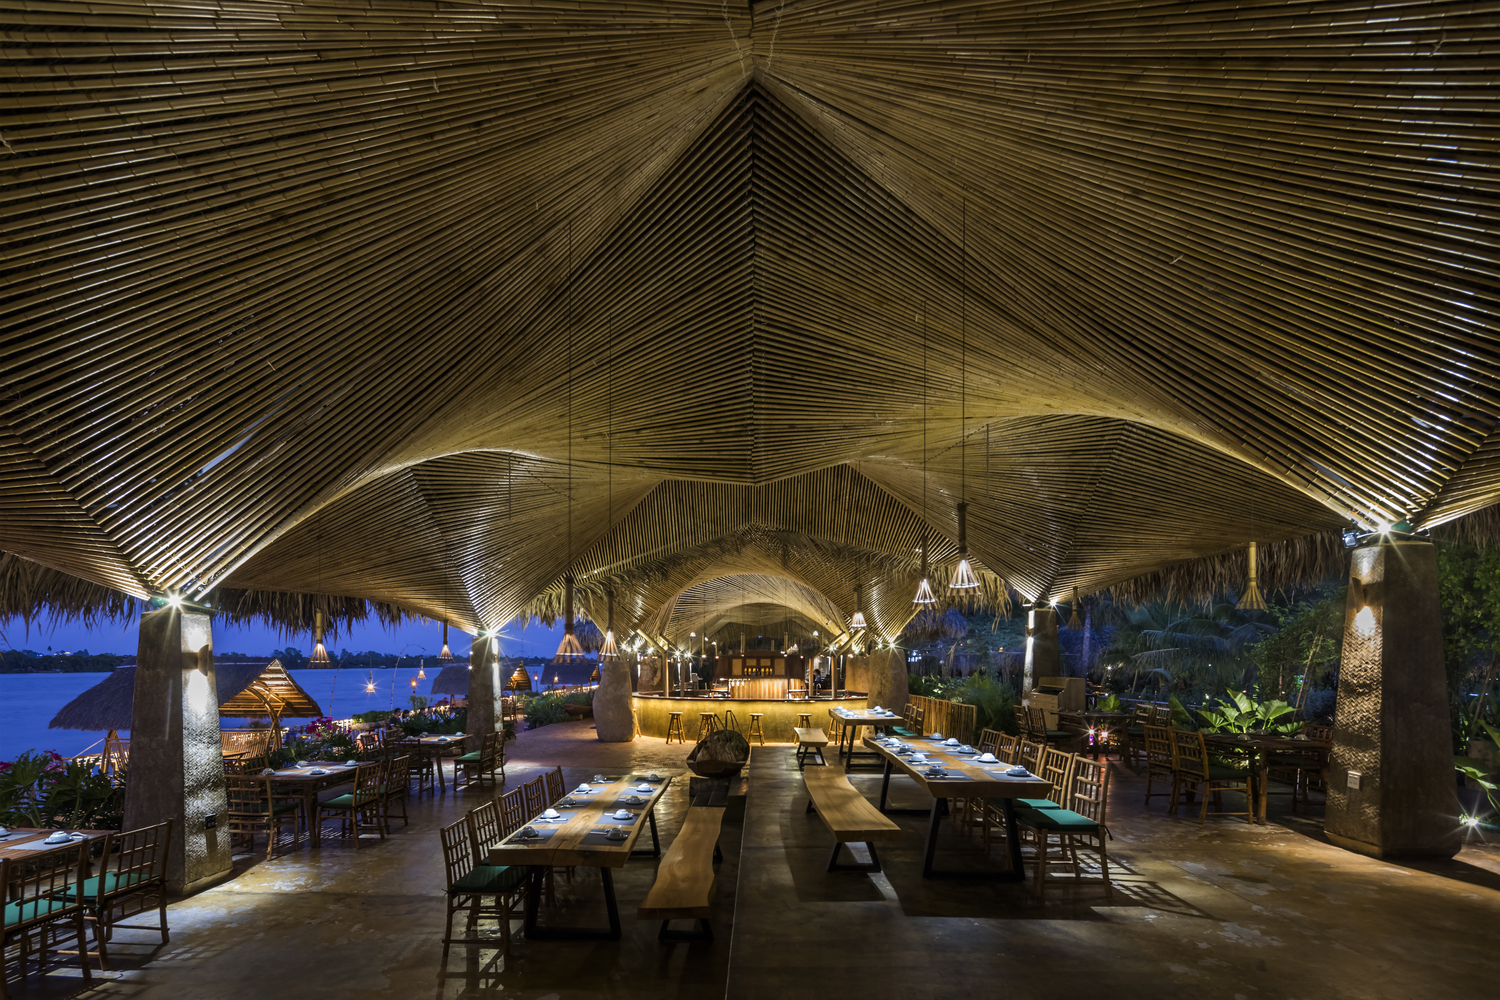 khung cảnh nhà hàng ven sông về đêm với ánh đèn vàng ấm áp